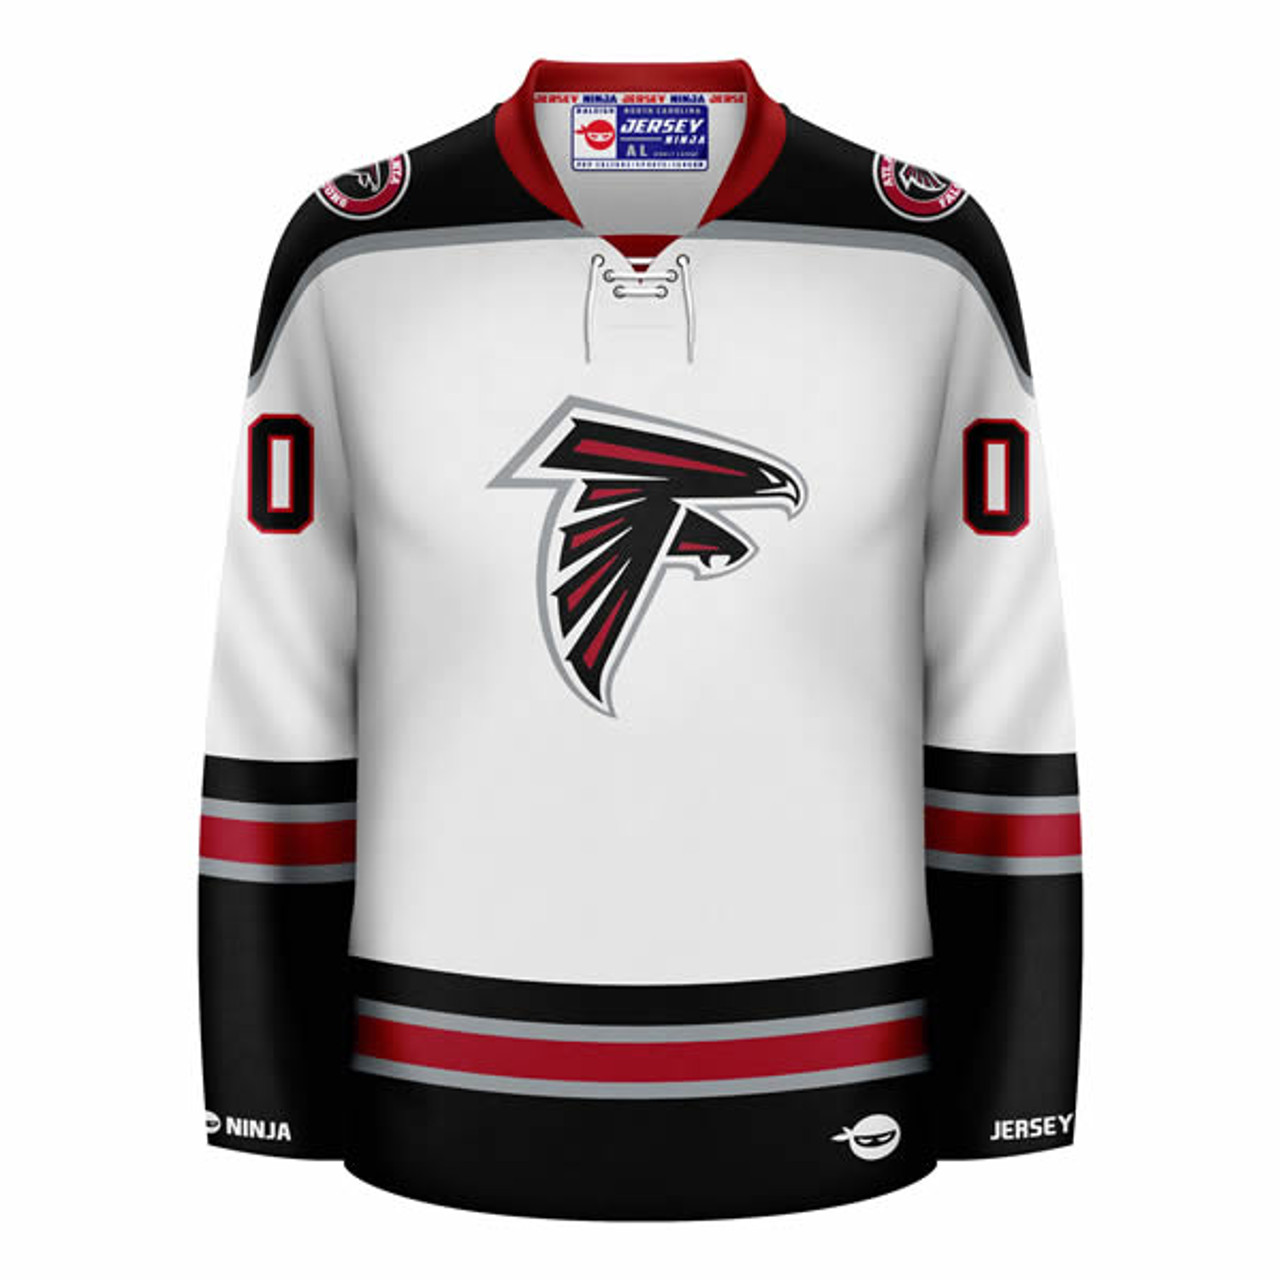 Jersey Ninja - Atlanta Falcons Black Hockey Jersey